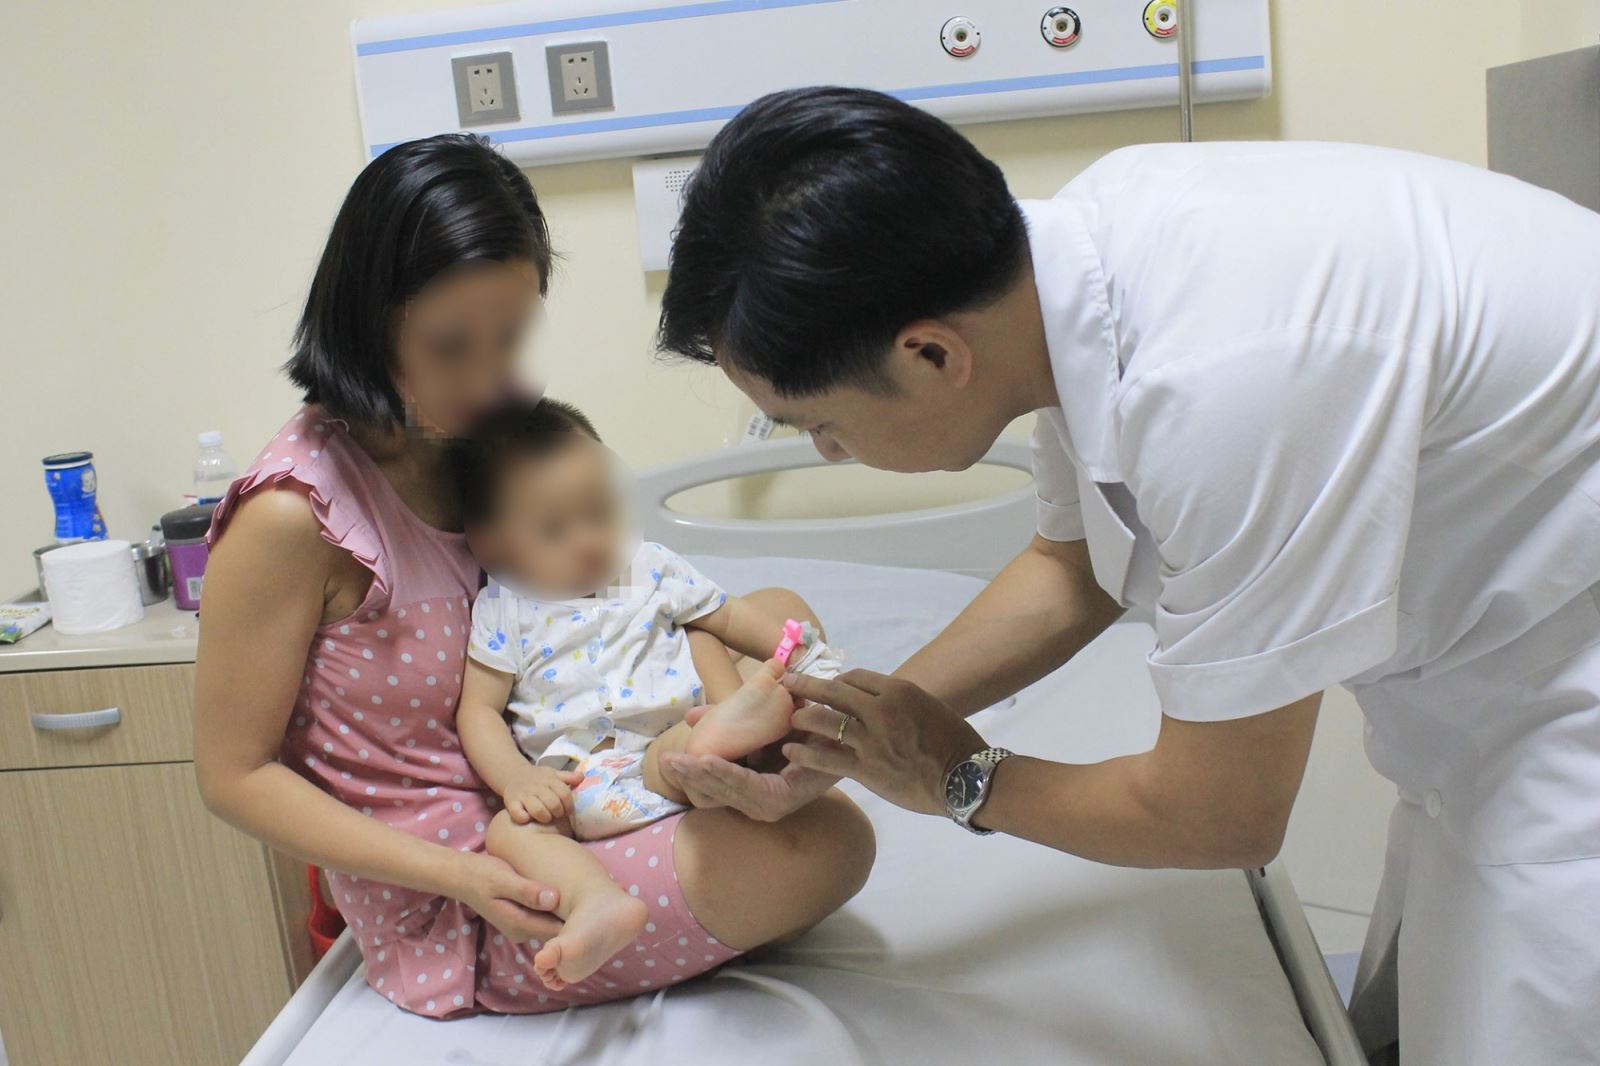 Hà Nội: Hơn 100 ca tay chân miệng trong 1 tuần, BS khuyến cáo 6 biện pháp chăm sóc trẻ mắc bệnh - Ảnh 2